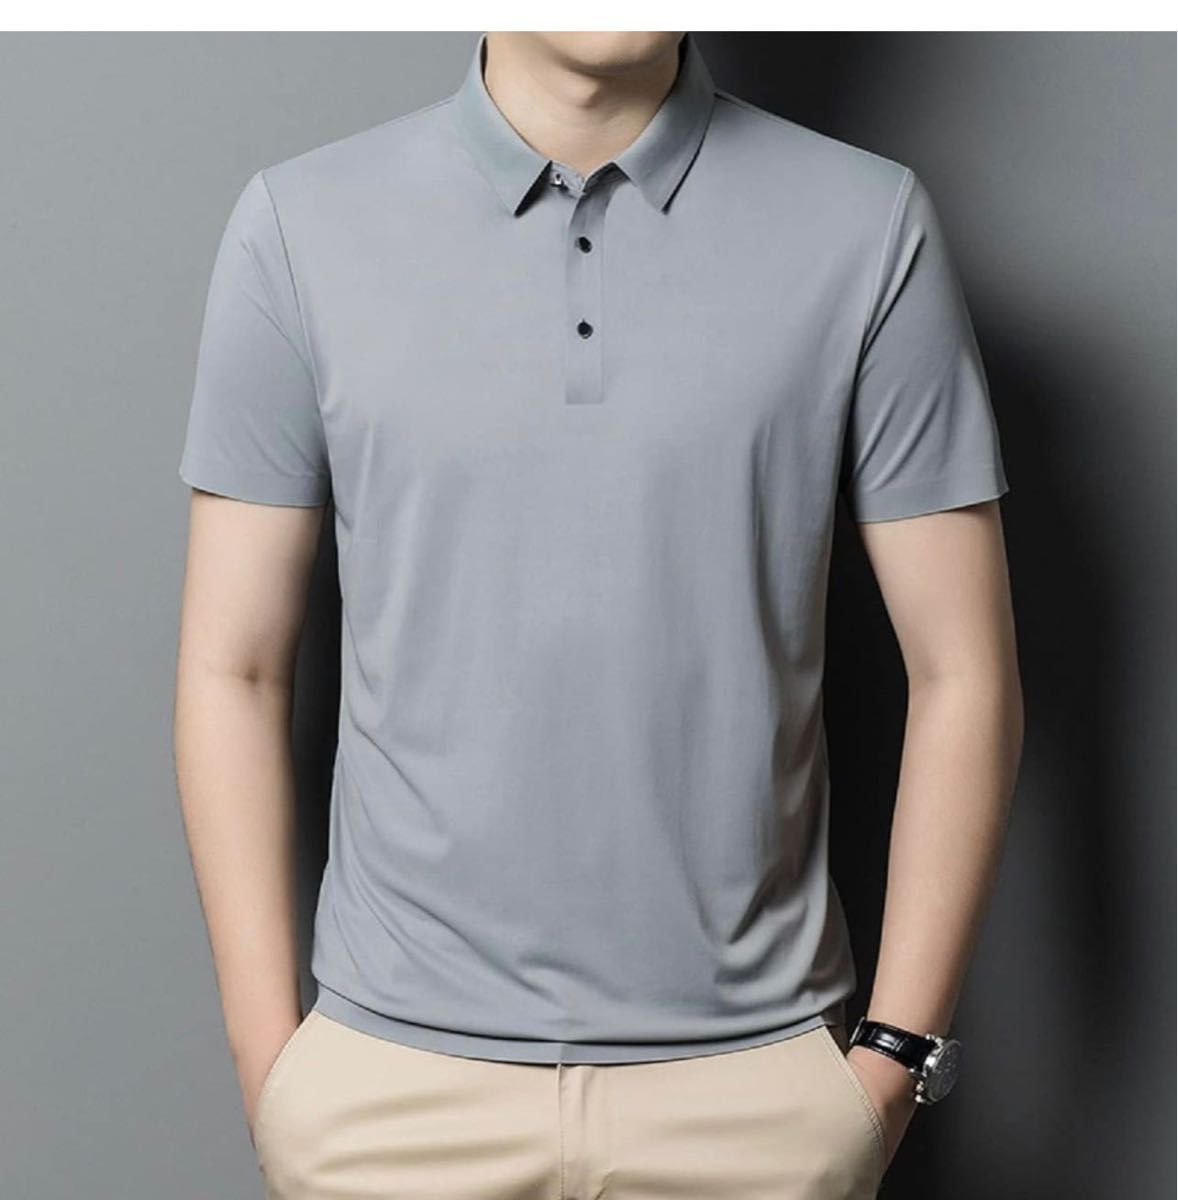 ポロシャツ メンズ 半袖 吸汗速乾 アウトドア ストレッチ 父の日 ゴルフ ゴルフウェア スポーツ 速乾シャツ 